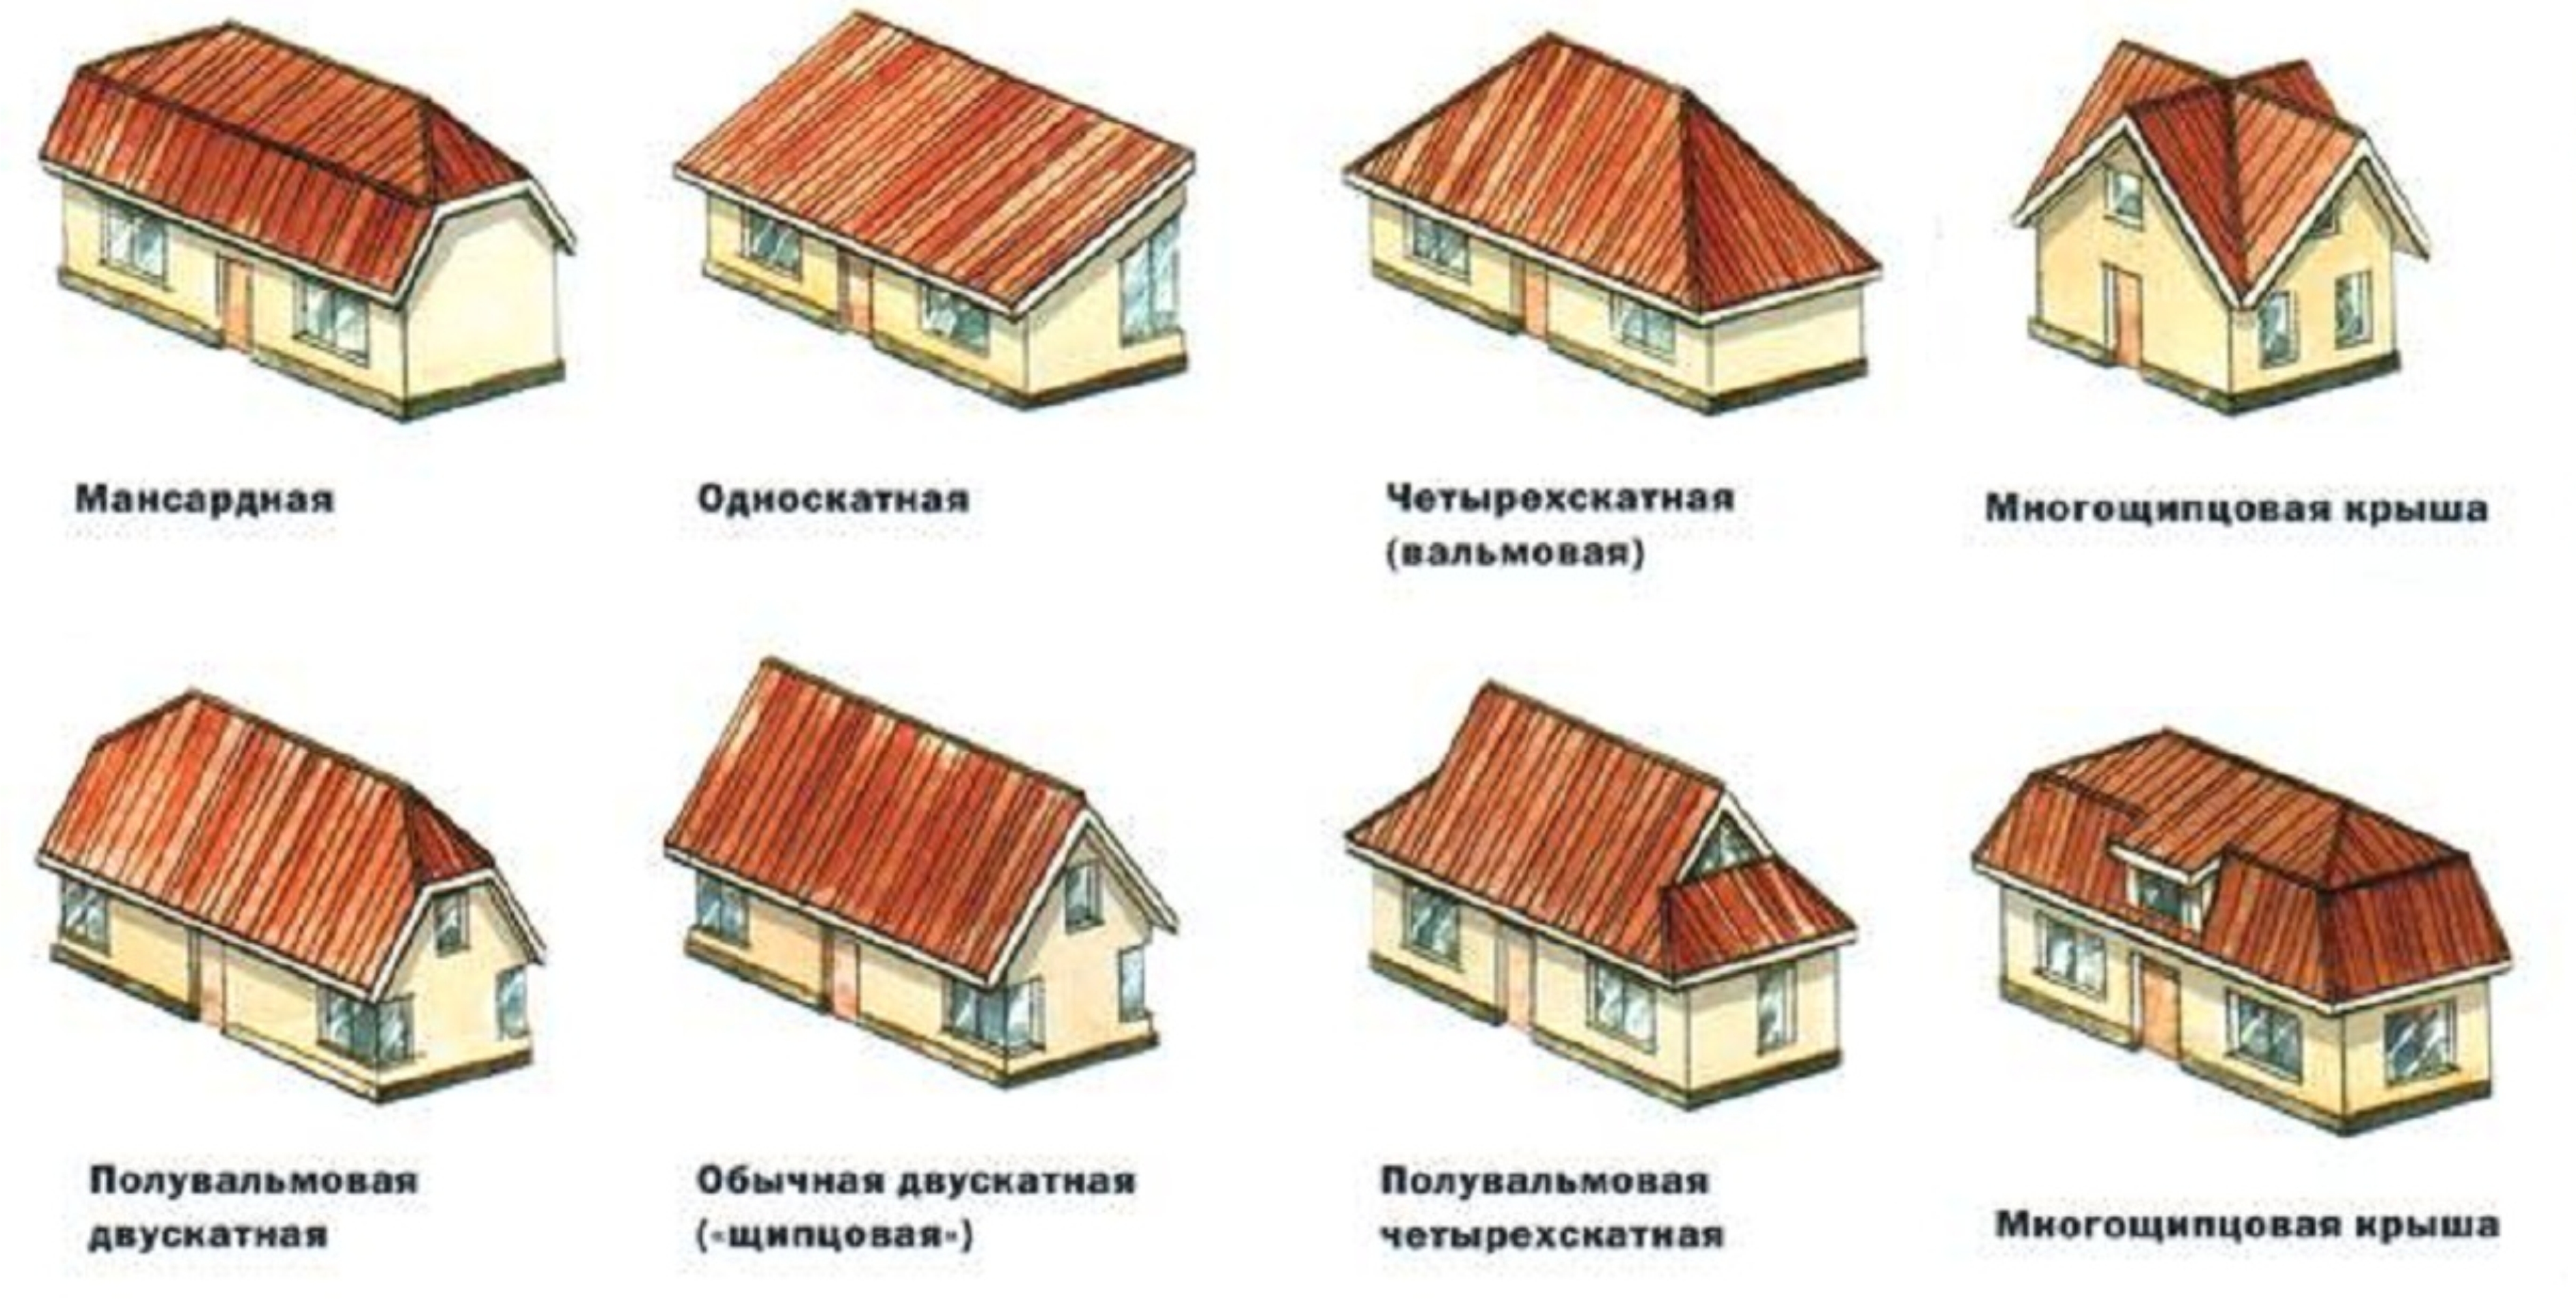 Дом с плоской крышей - современное комфортабельное жилье